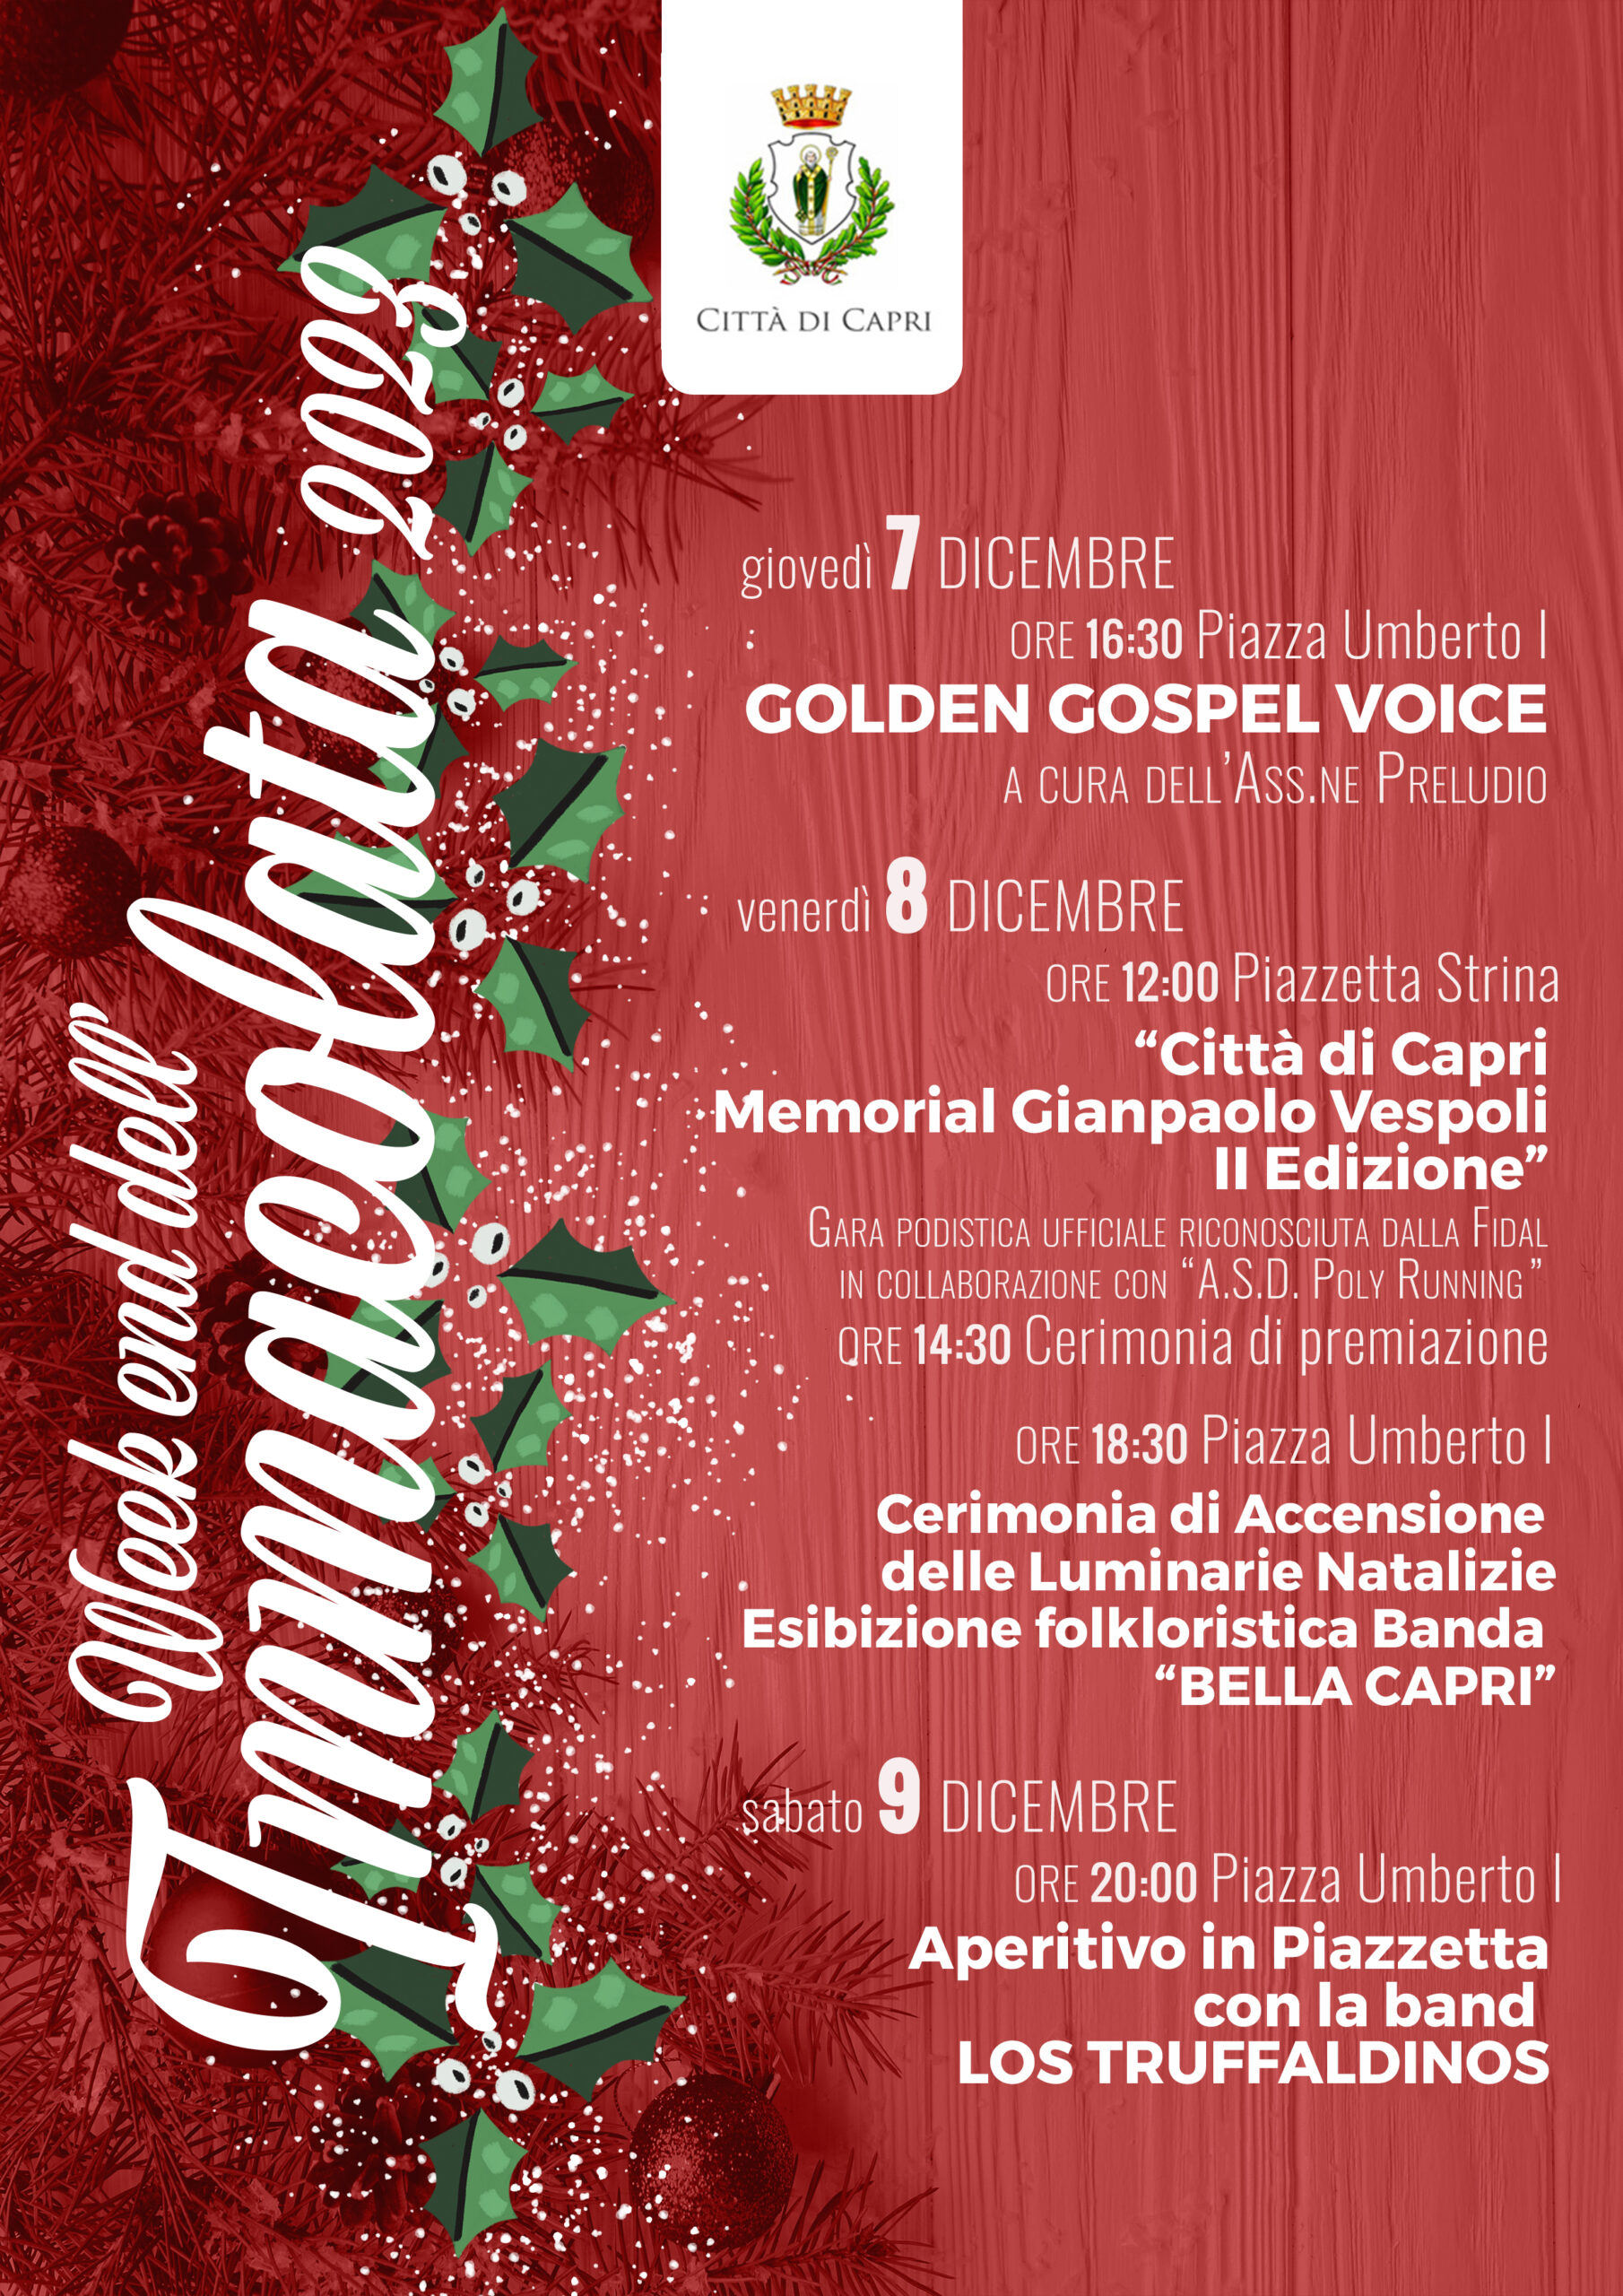 Il coro gospel aprirà gli eventi del weekend dell’Immacolata in Piazzetta